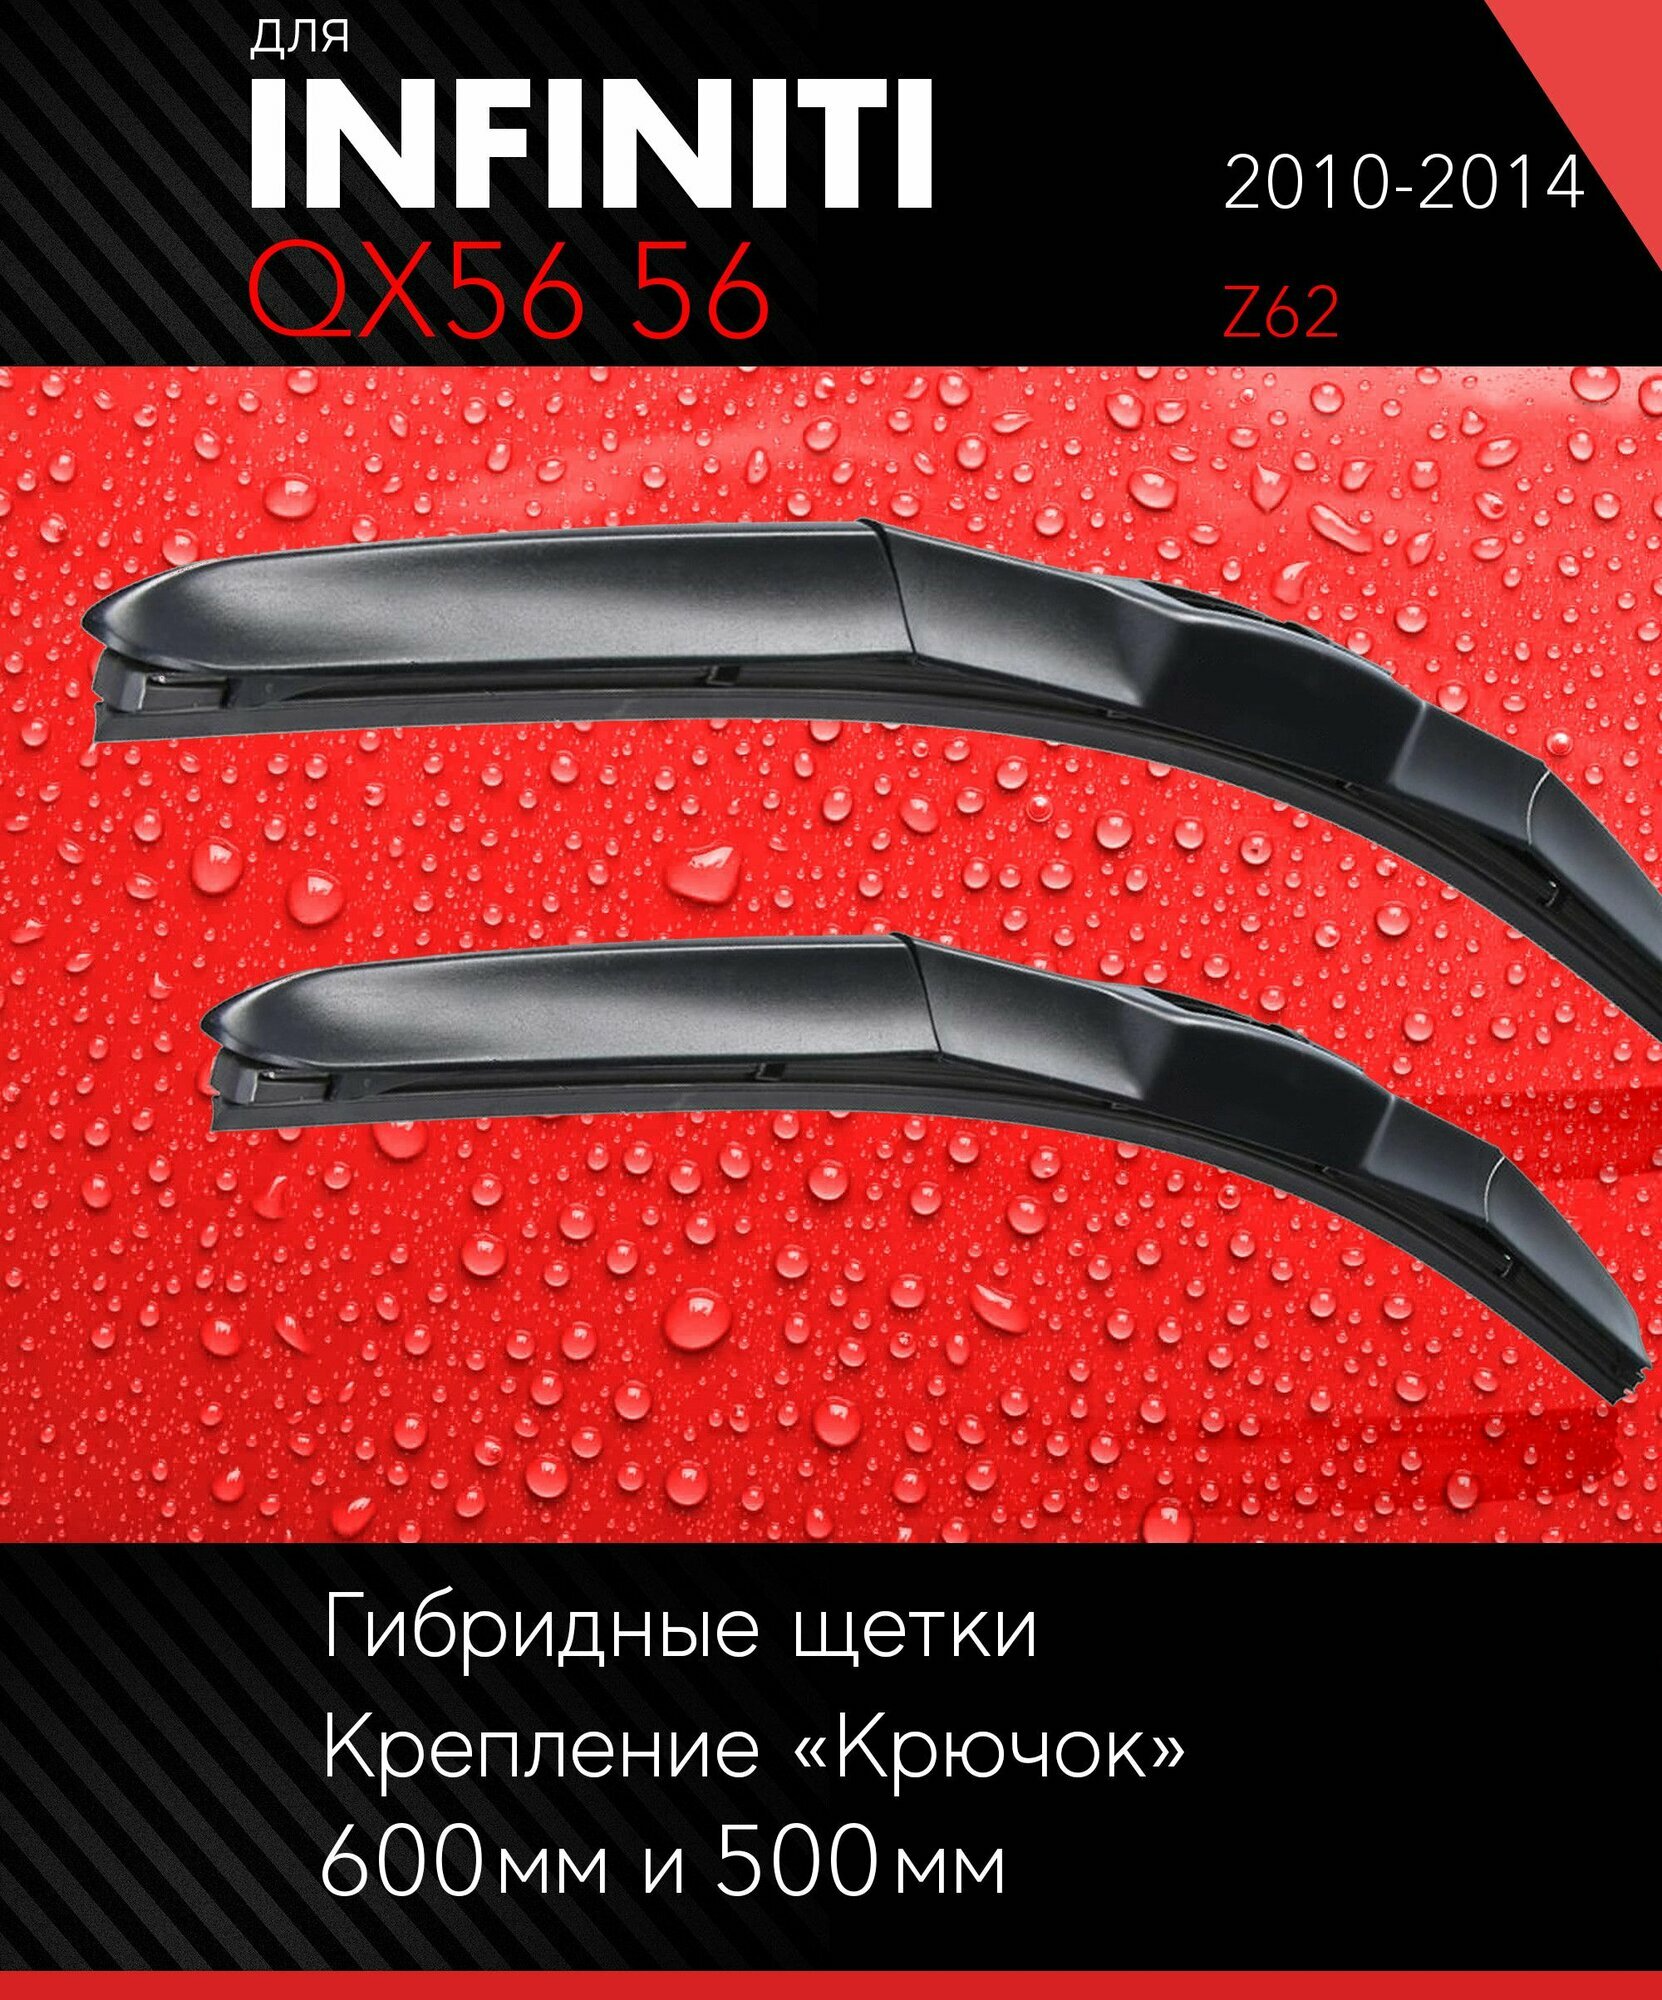 2 щетки стеклоочистителя 600 500 мм на Инфинити Ку Икс 56 2010-2014, гибридные дворники комплект для Infiniti QX56 56 (Z62) - Autoled